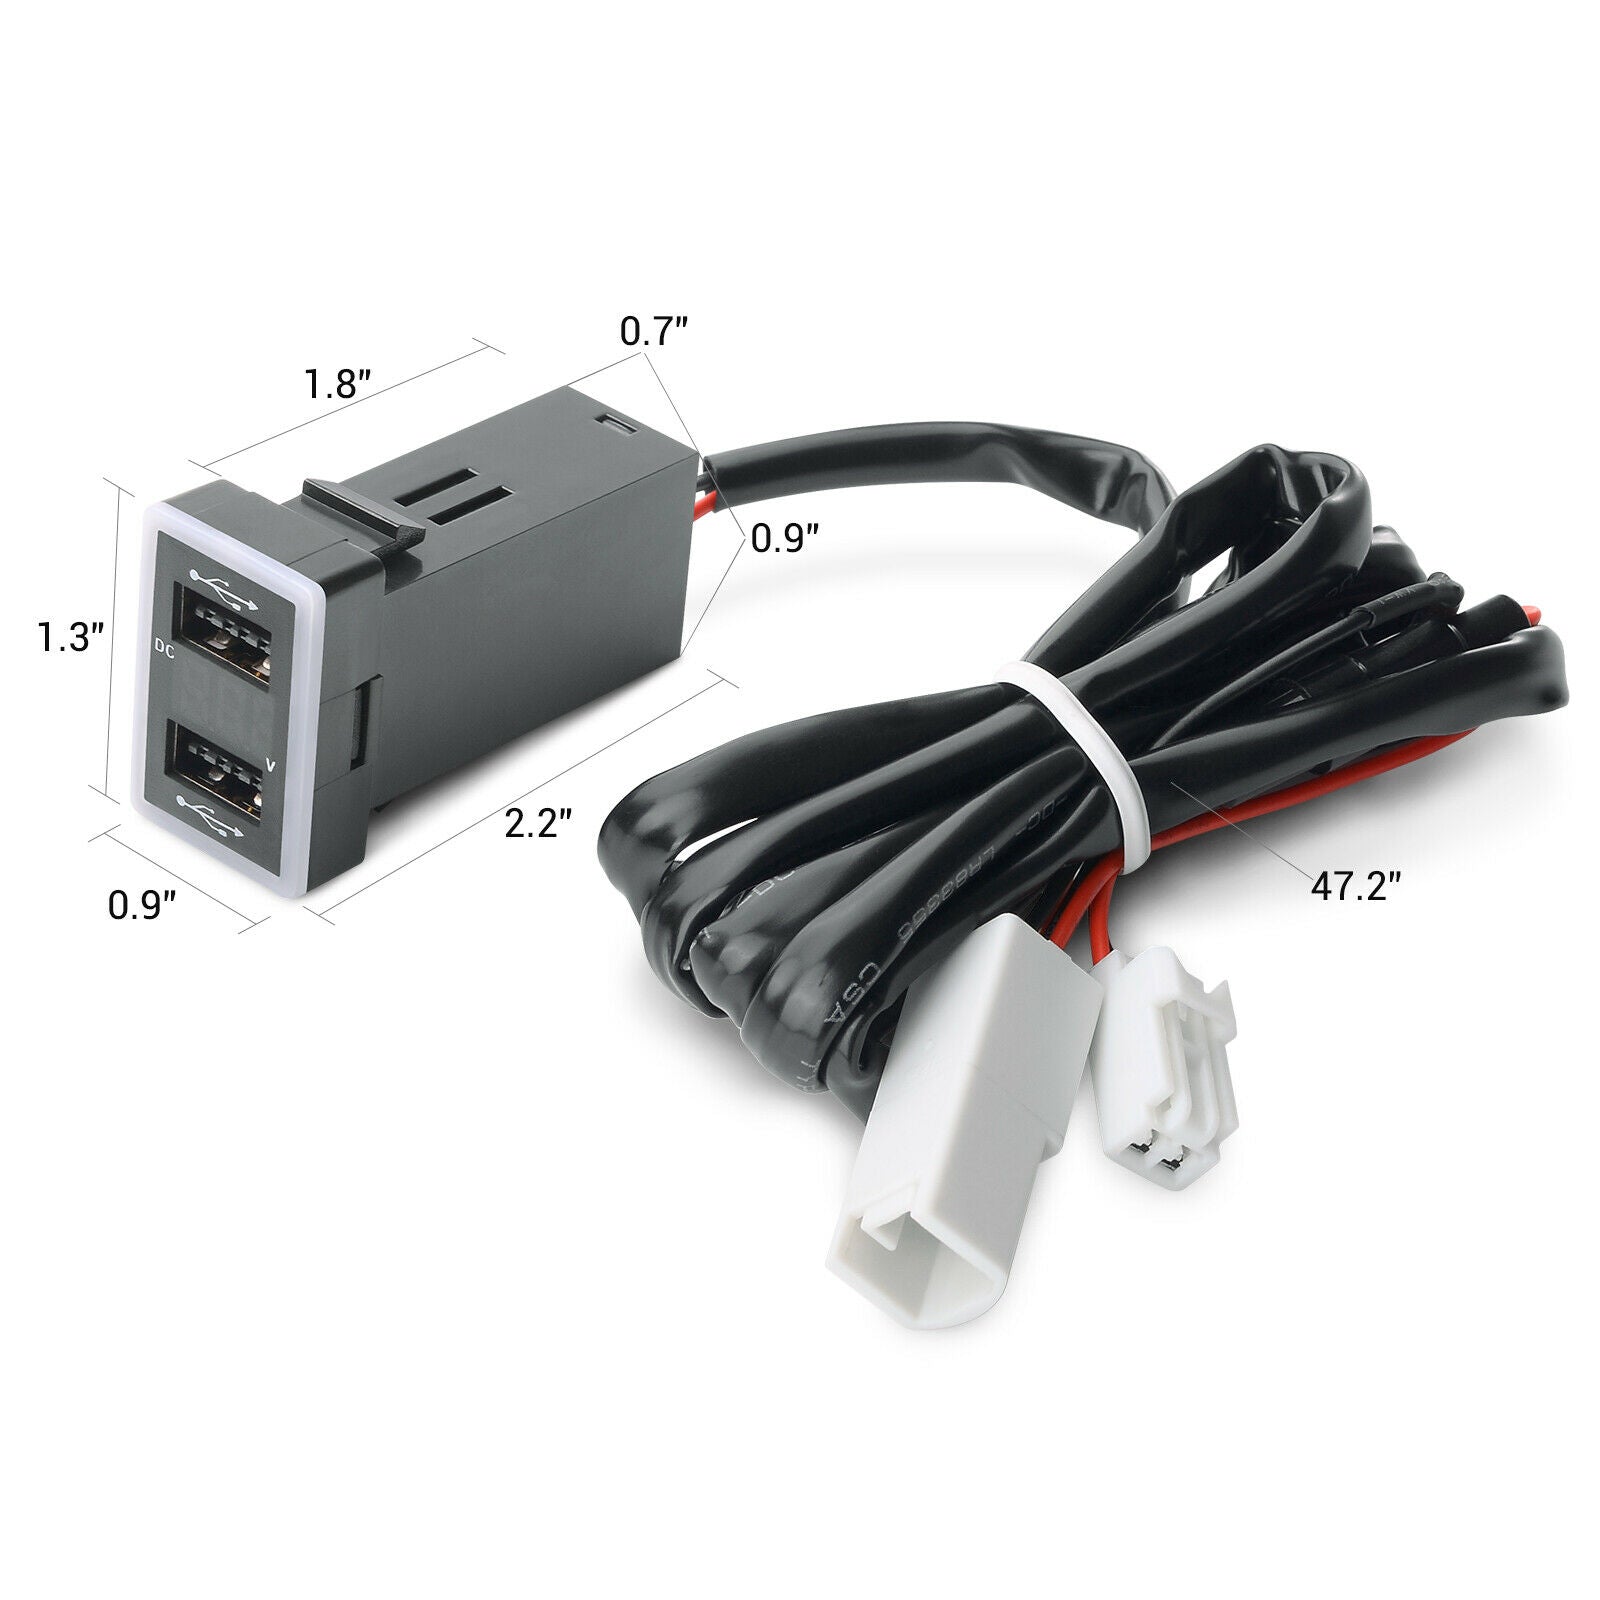 Kaufe 1pc Universal Multi-funktion Auto Ladegerät Dual USB QC 3,0 Adapter  Zigarette Leichter LED Voltmeter Für Alle Arten von Mobiltelefonen